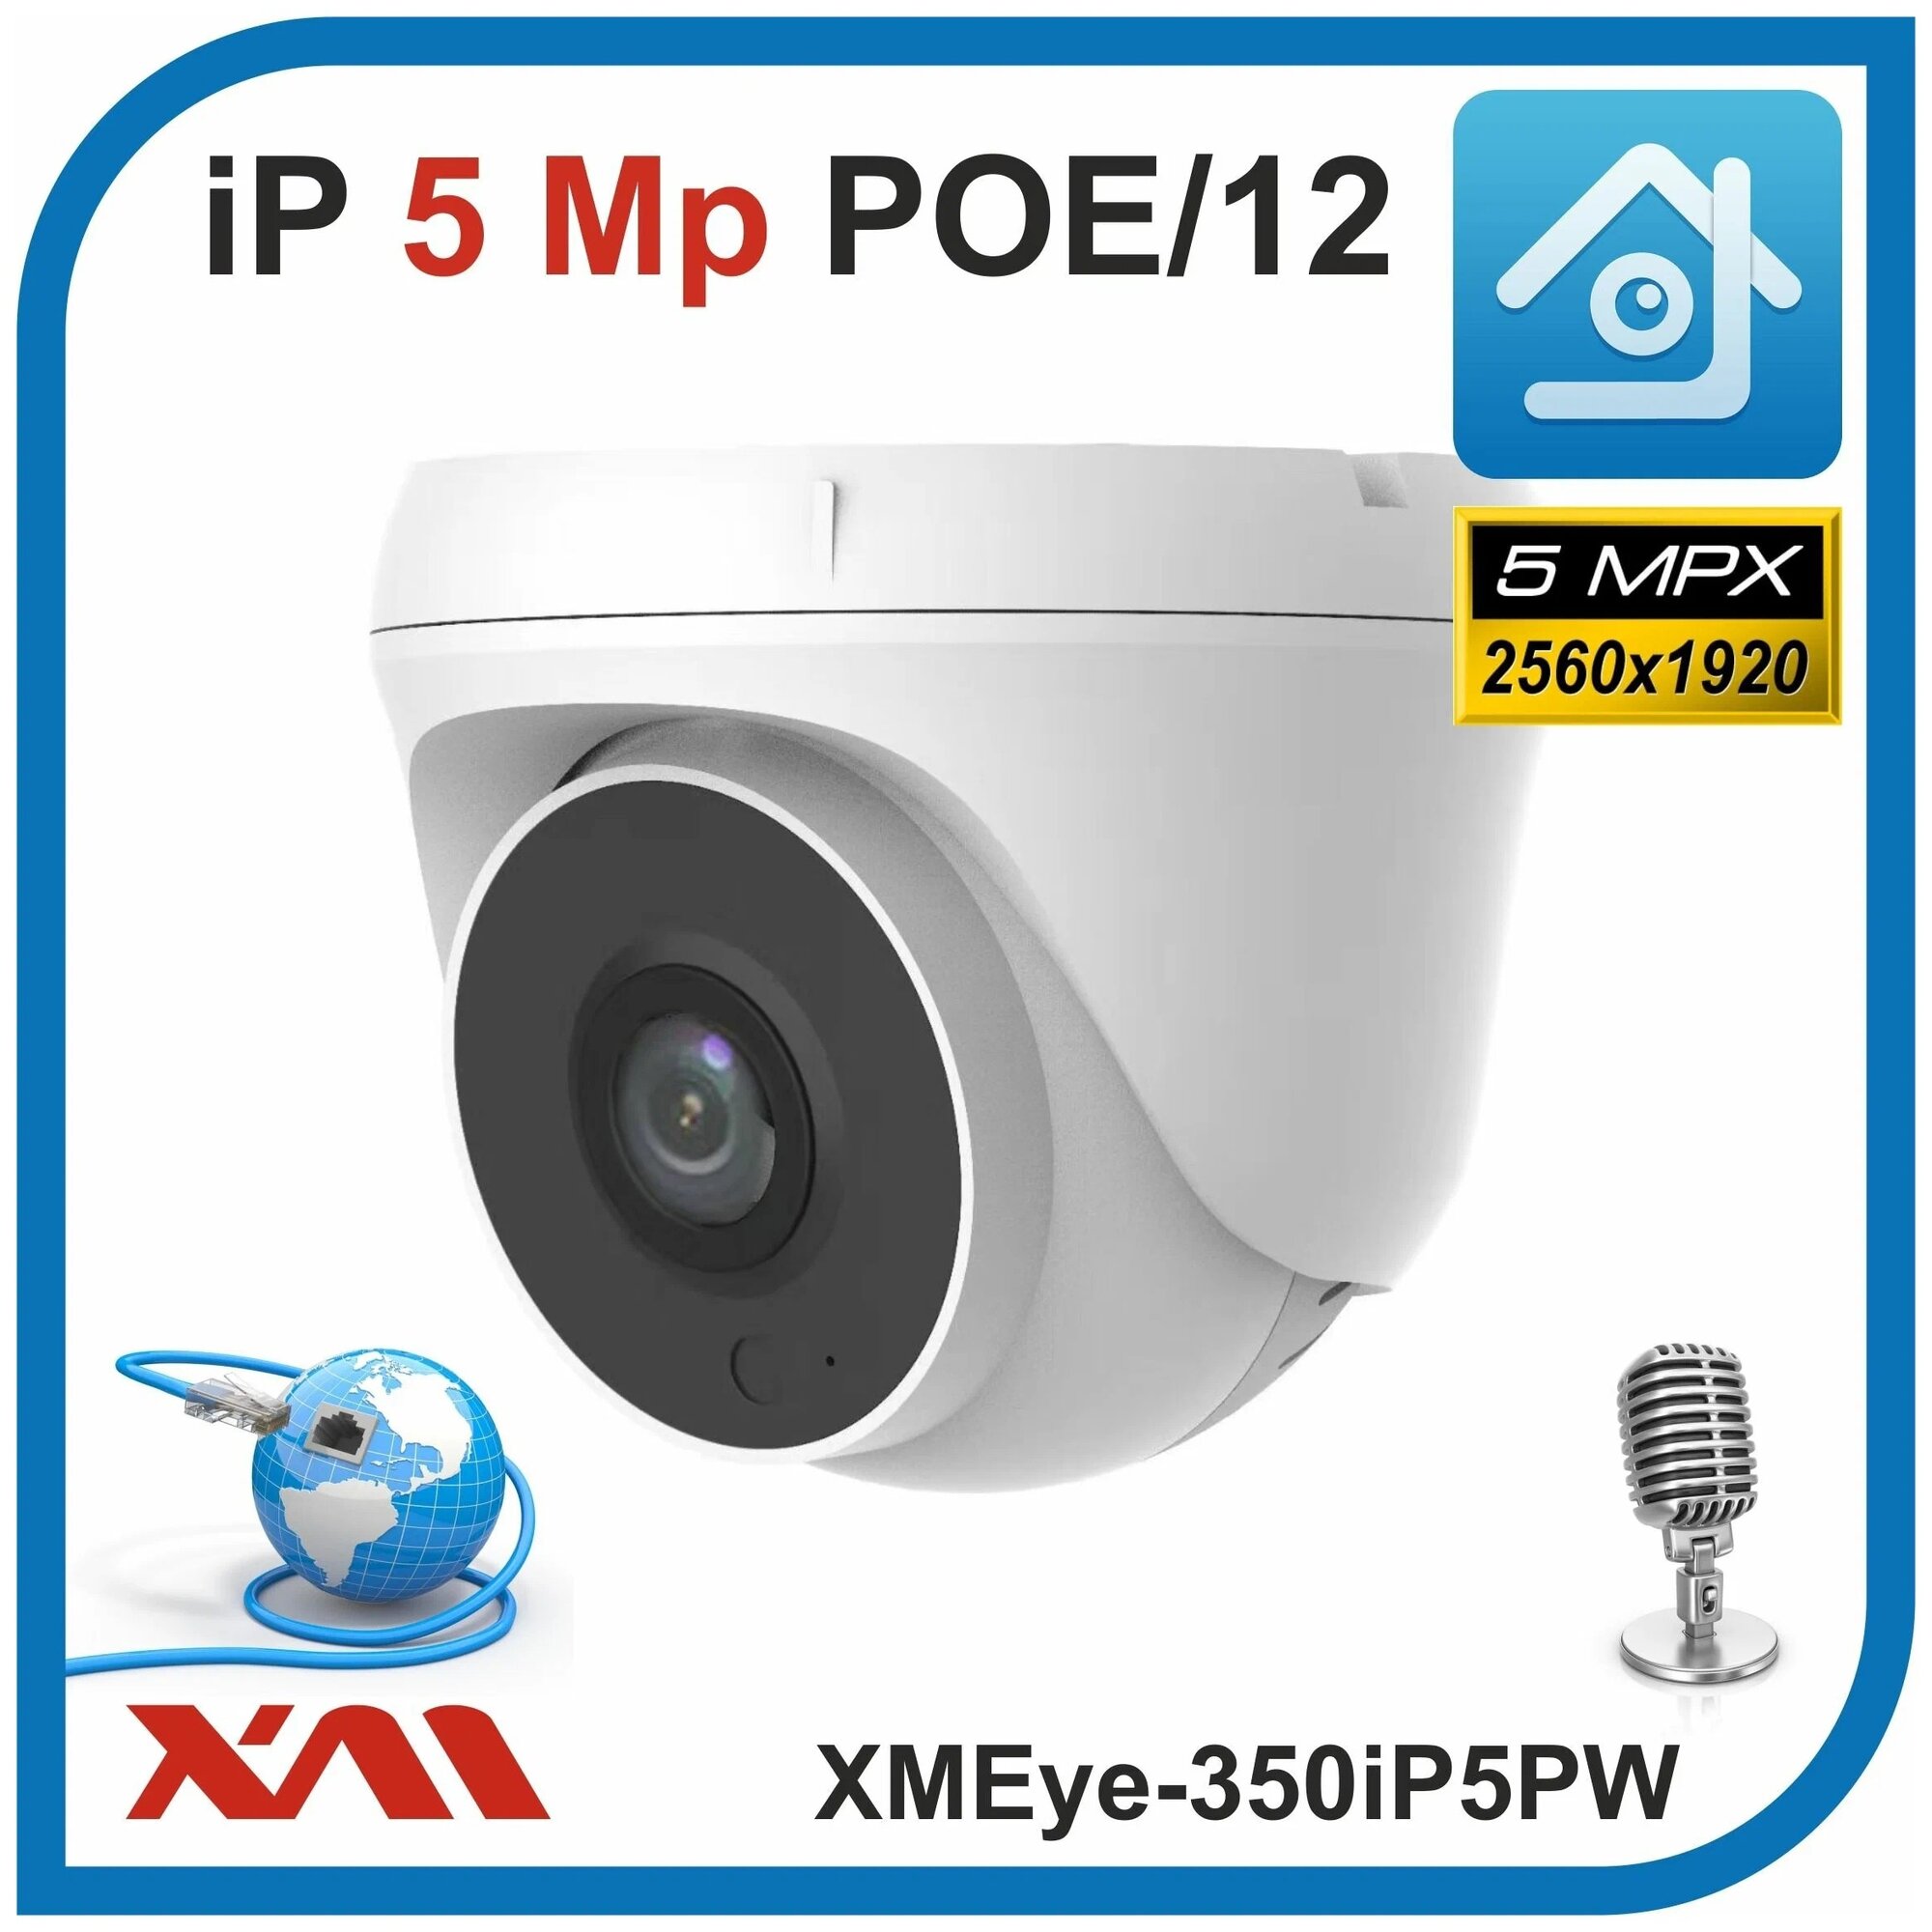 Камера видеонаблюдения купольная с микрофоном IP, 5Mpx, 1920P, XMEye-350iP5PW-2.8. POE/12 (Пластик/Белая) - фотография № 3